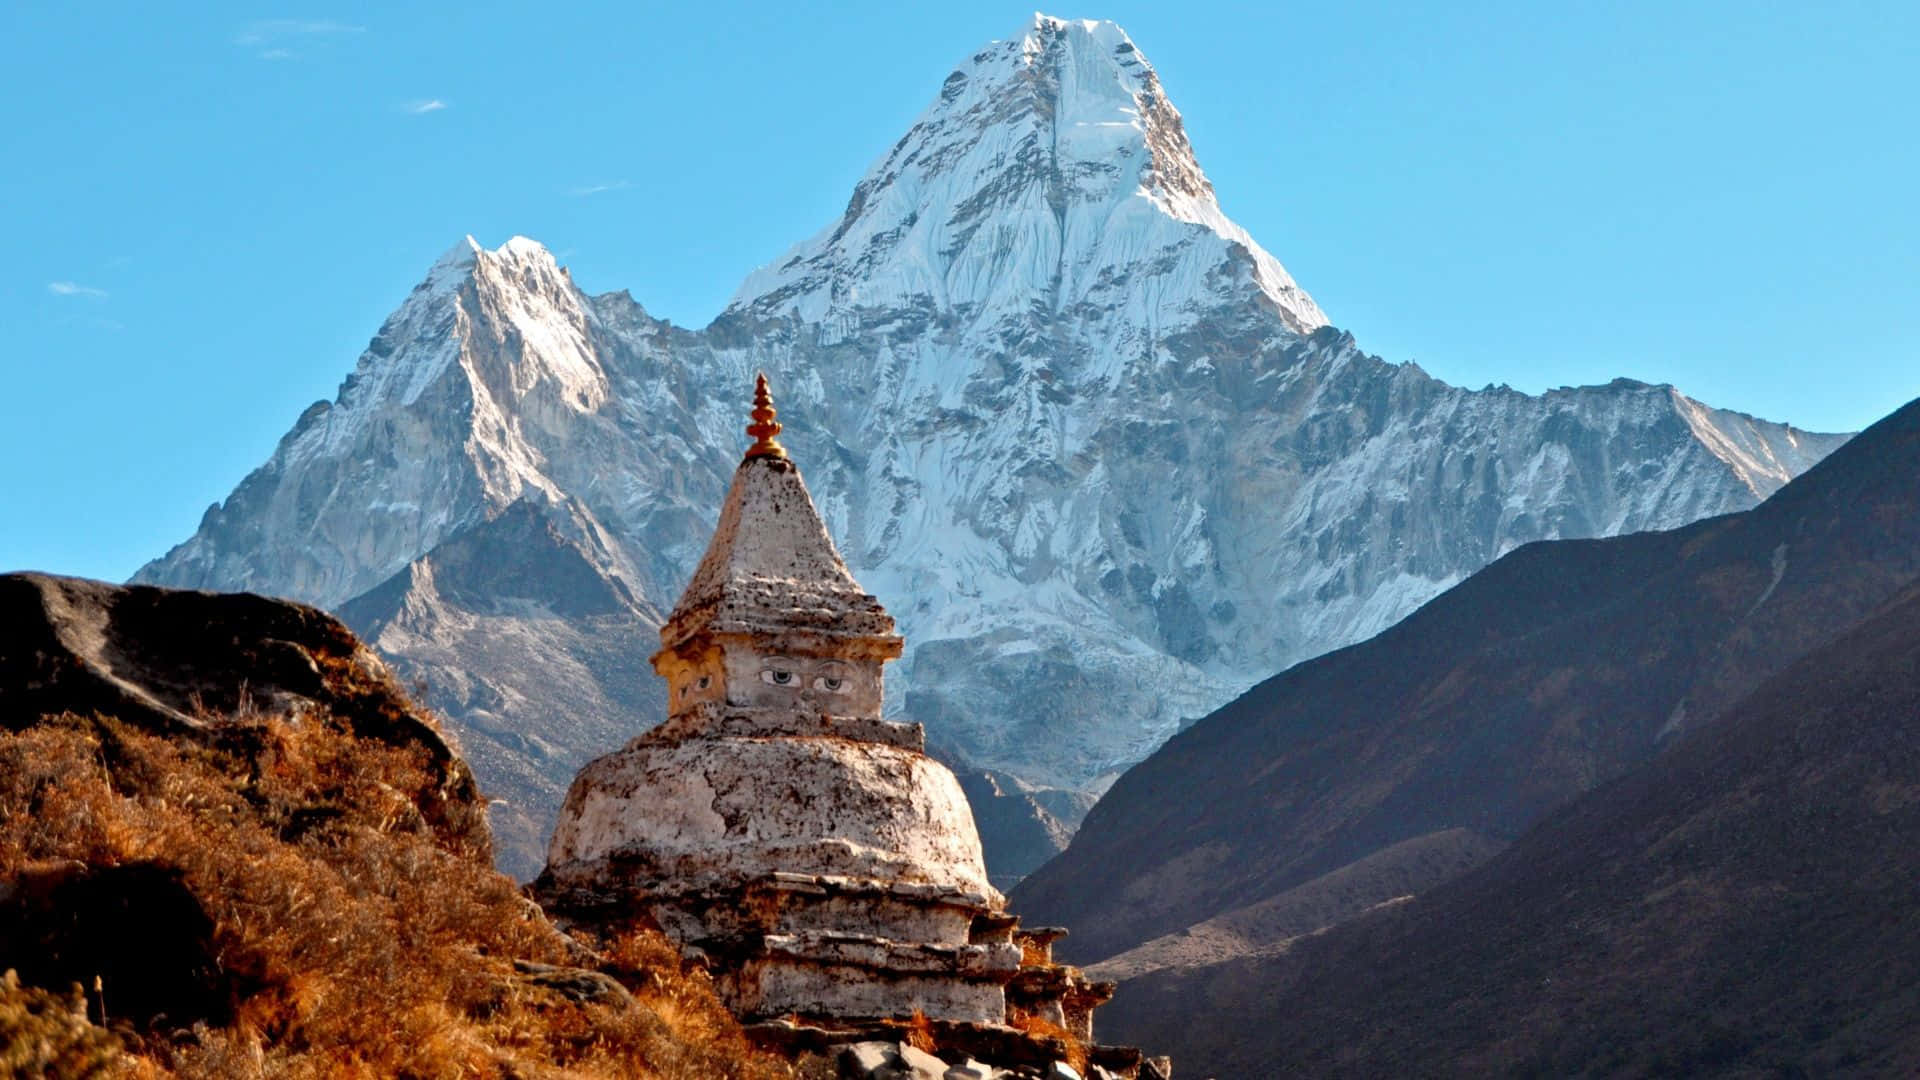 Lamajestuosidad De La Naturaleza - Los Himalayas